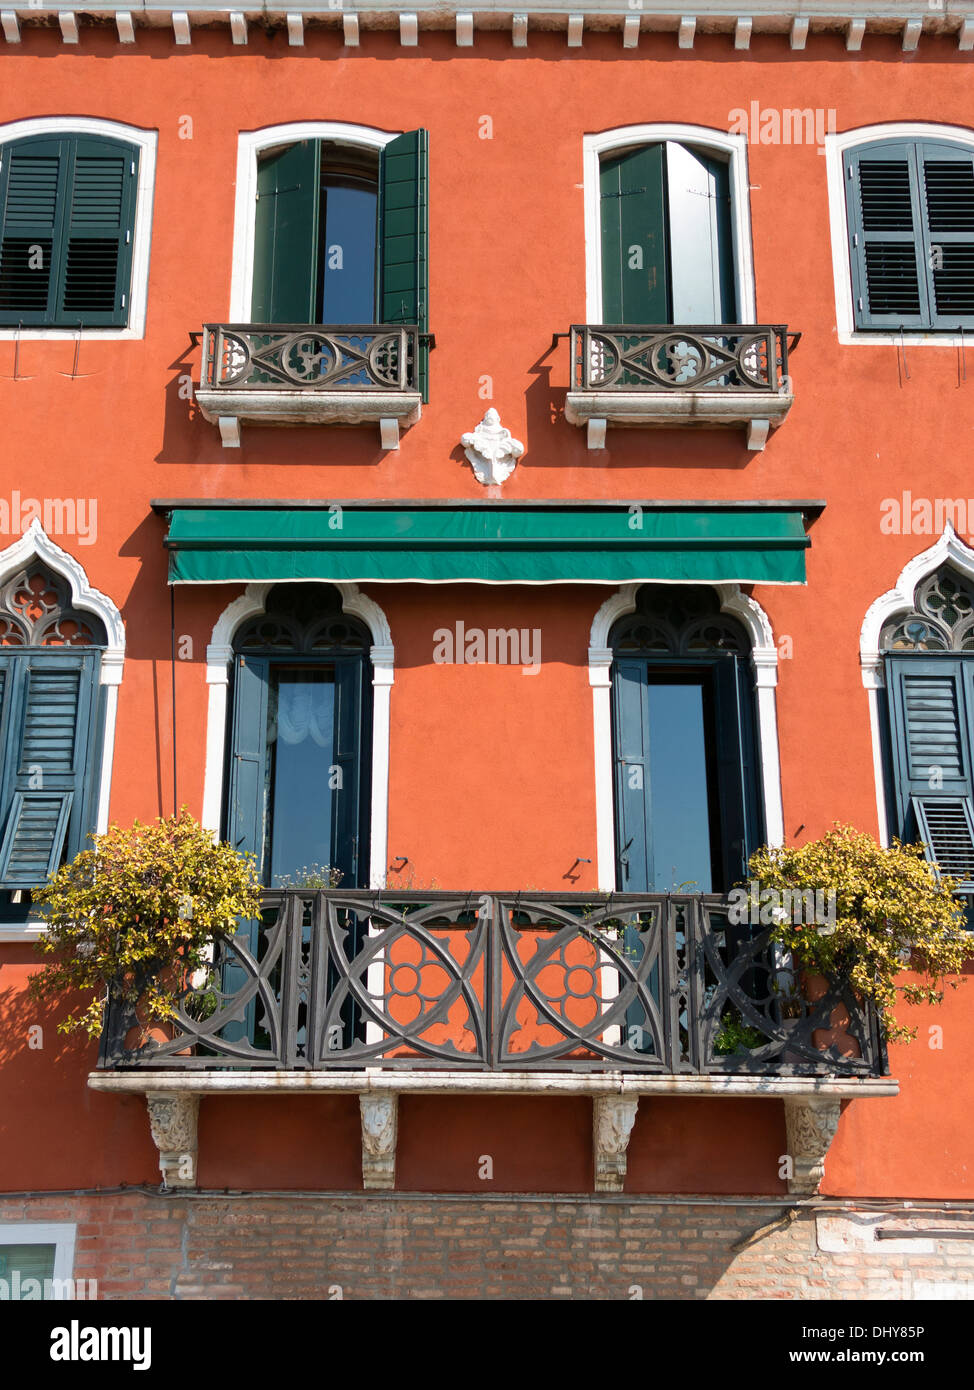 Naranja rojo terracota prestados casa veneciana fachada con balcones y contraventanas verdes, Venecia, Italia. Foto de stock